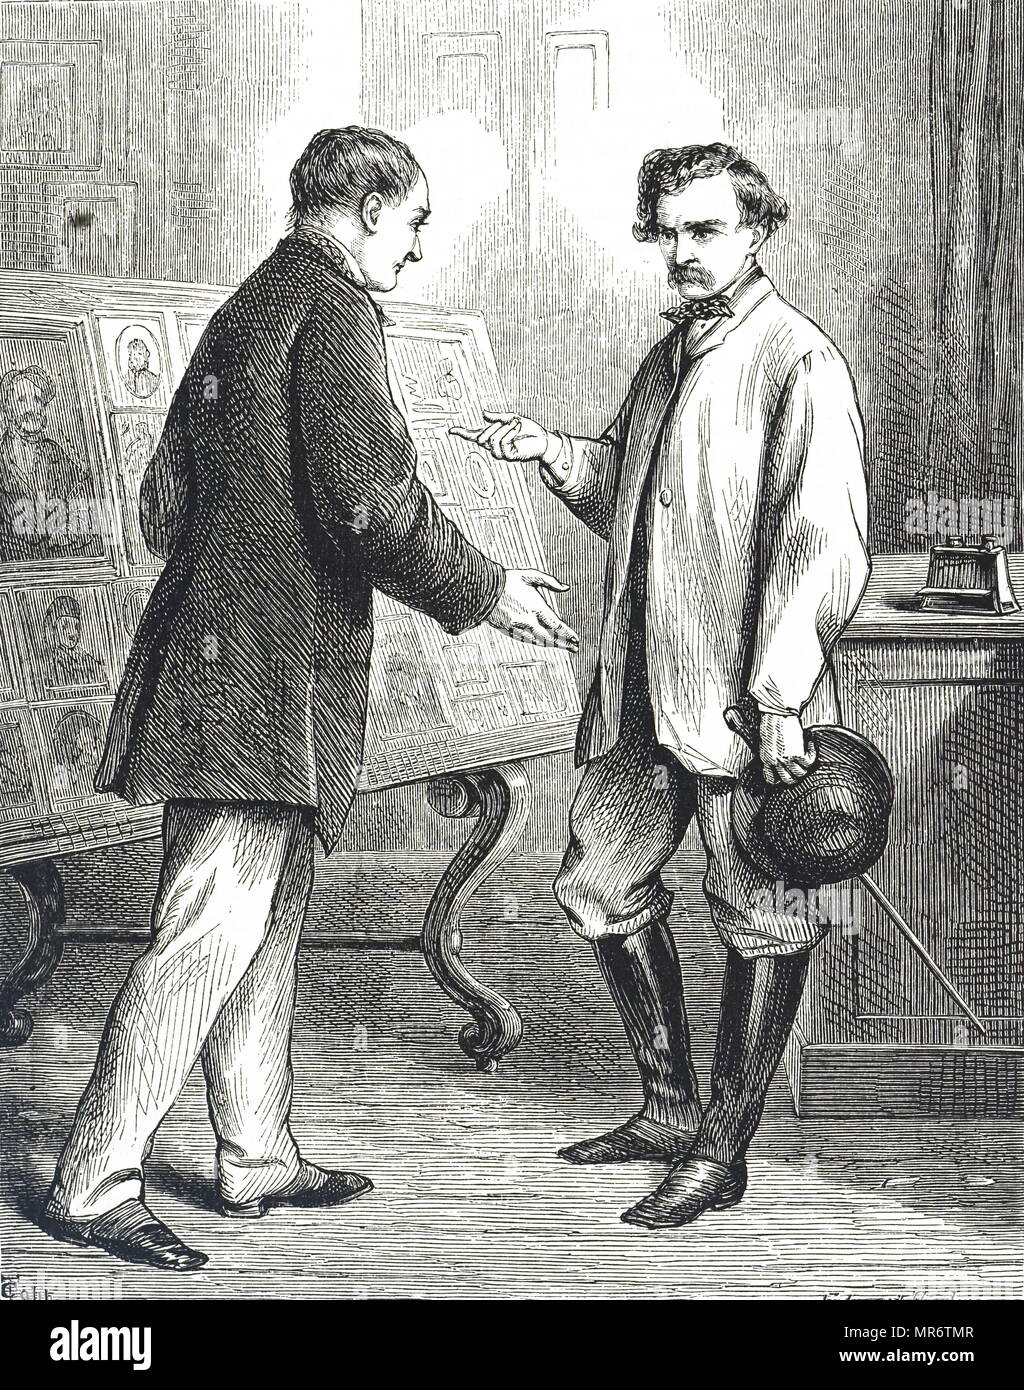 Grabado representando a un cliente examinar una muestra imágenes del fotógrafo. Ilustrado por Edward Hughes (1832-1908), un artista británico. Fecha del siglo XIX Foto de stock